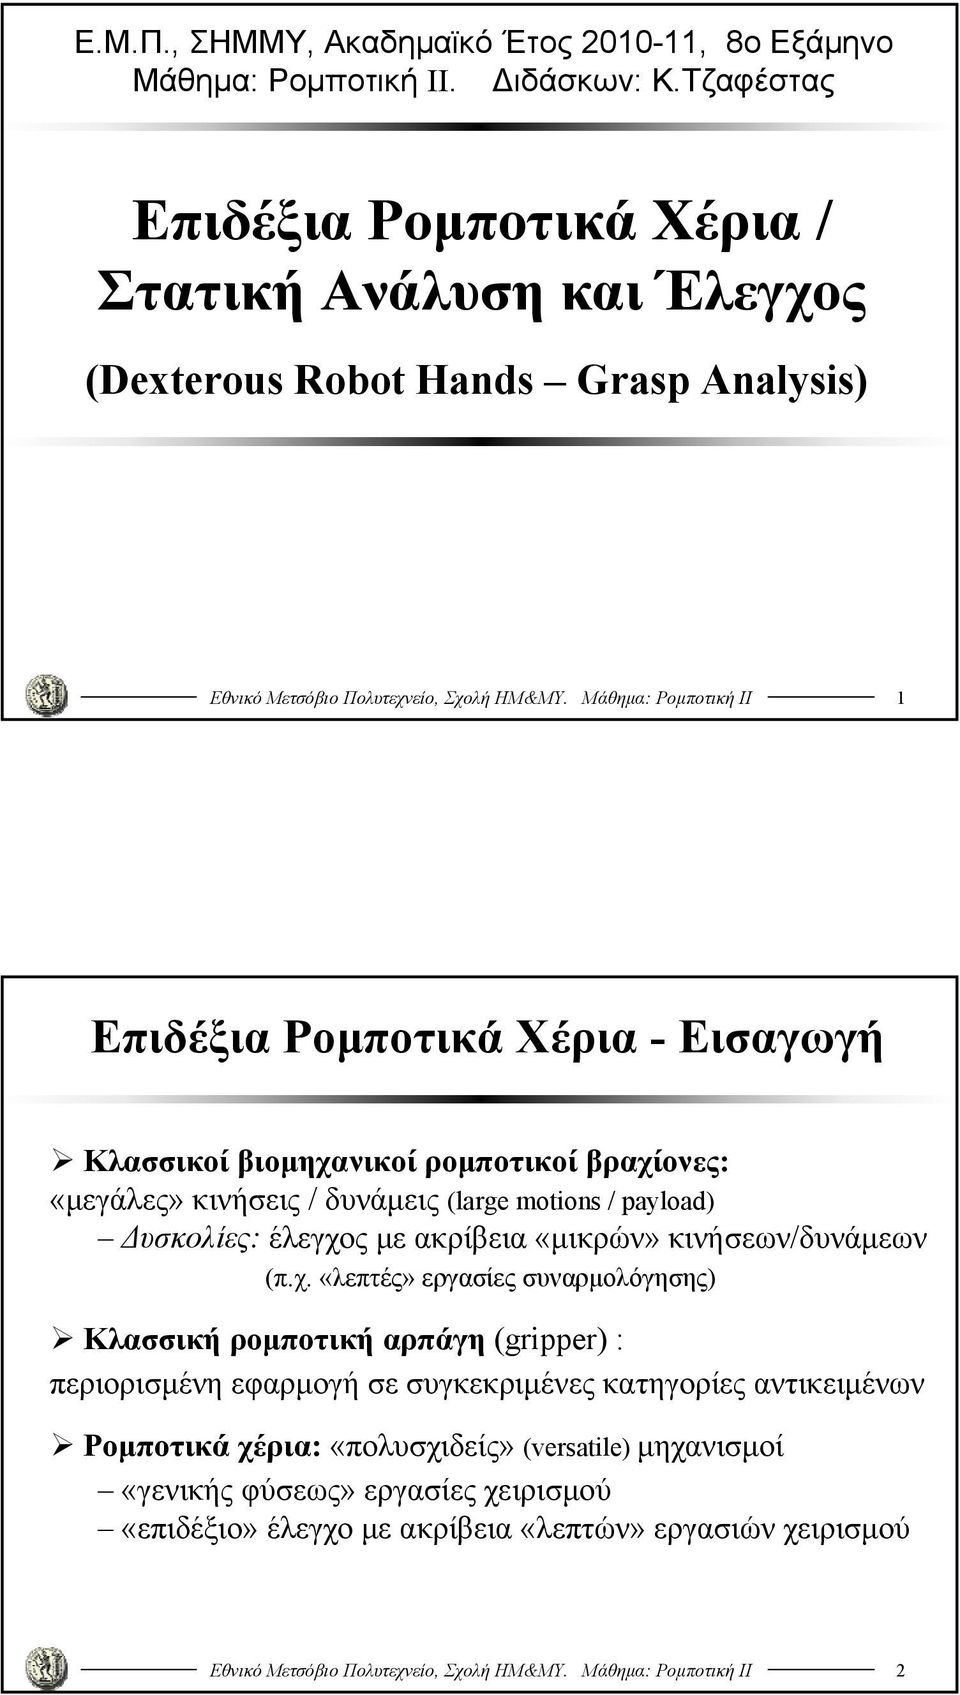 Μάθημα: Ρομποτική ΙΙ Επιδέξια Ρομποτικά Χέρια - Εισαγωγή Κλασσικοί βιομηχανικοί ρομποτικοί βραχίονες: «μεγάλες» κινήσεις / δυνάμεις (large motons / payload) Δυσκολίες: έλεγχος με ακρίβεια «μικρών»